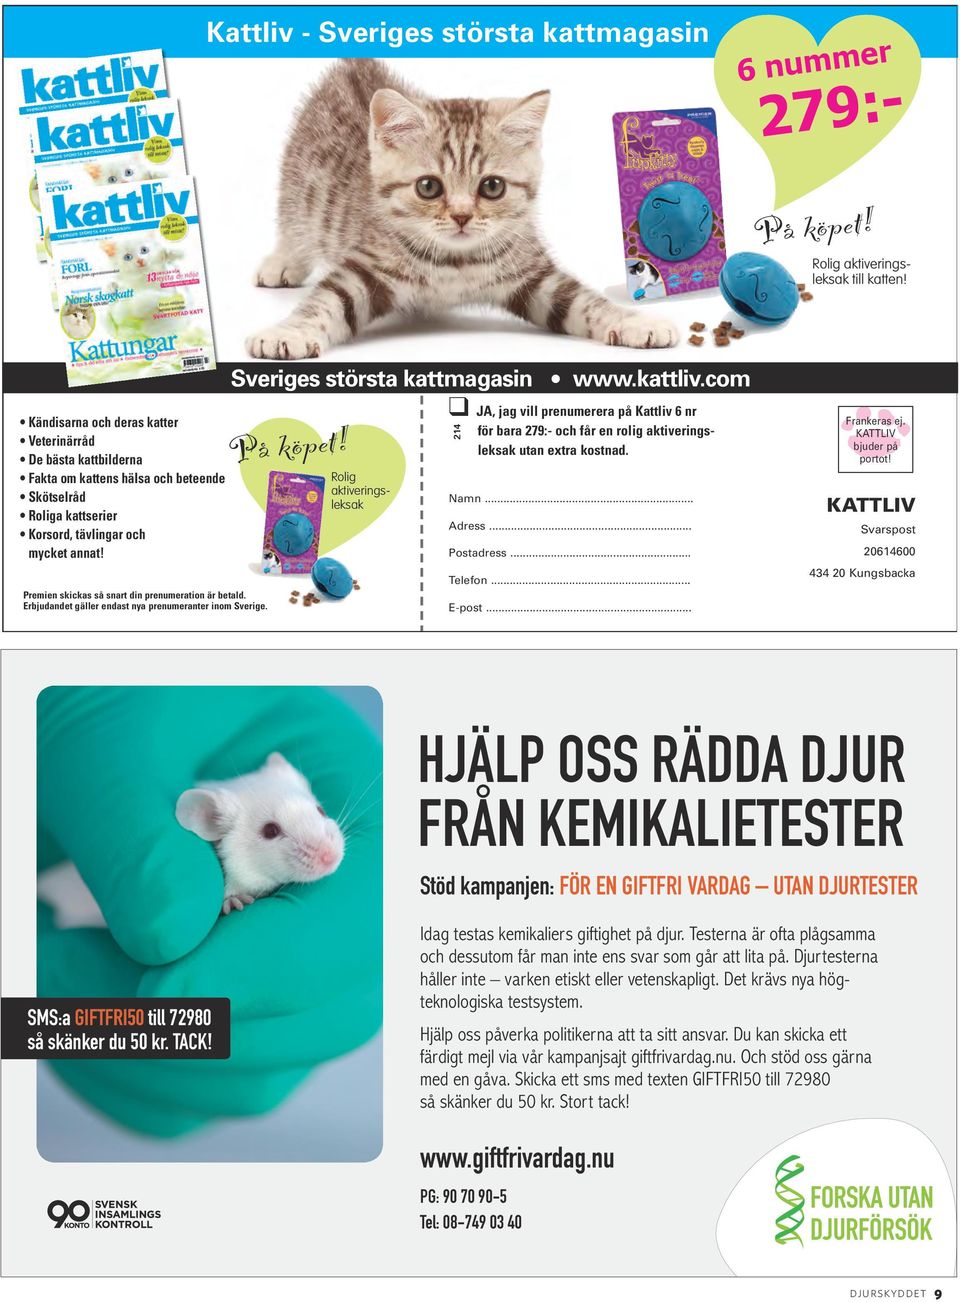 Premien skickas så snart din prenumeration är betald. Erbjudandet gäller endast nya prenumeranter inom Sverige. Sveriges största kattmagasin På köpet!